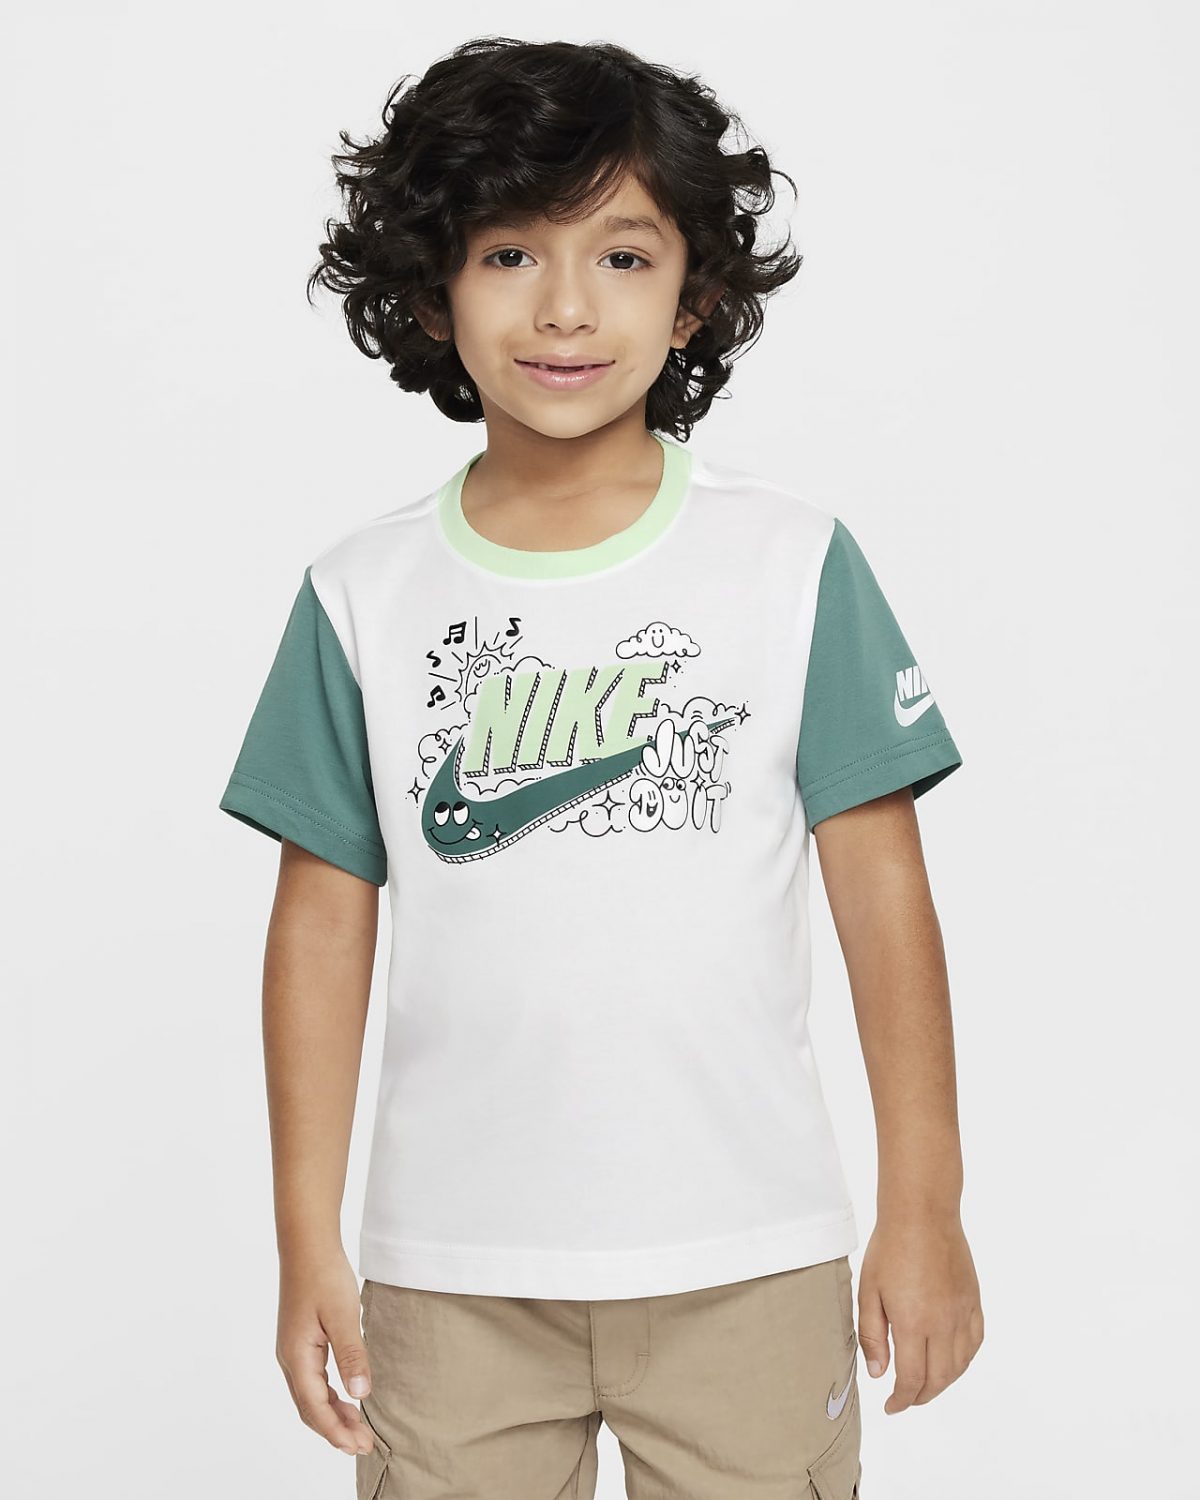 Детская футболка Nike Create Your Own Adventure зеленая фото